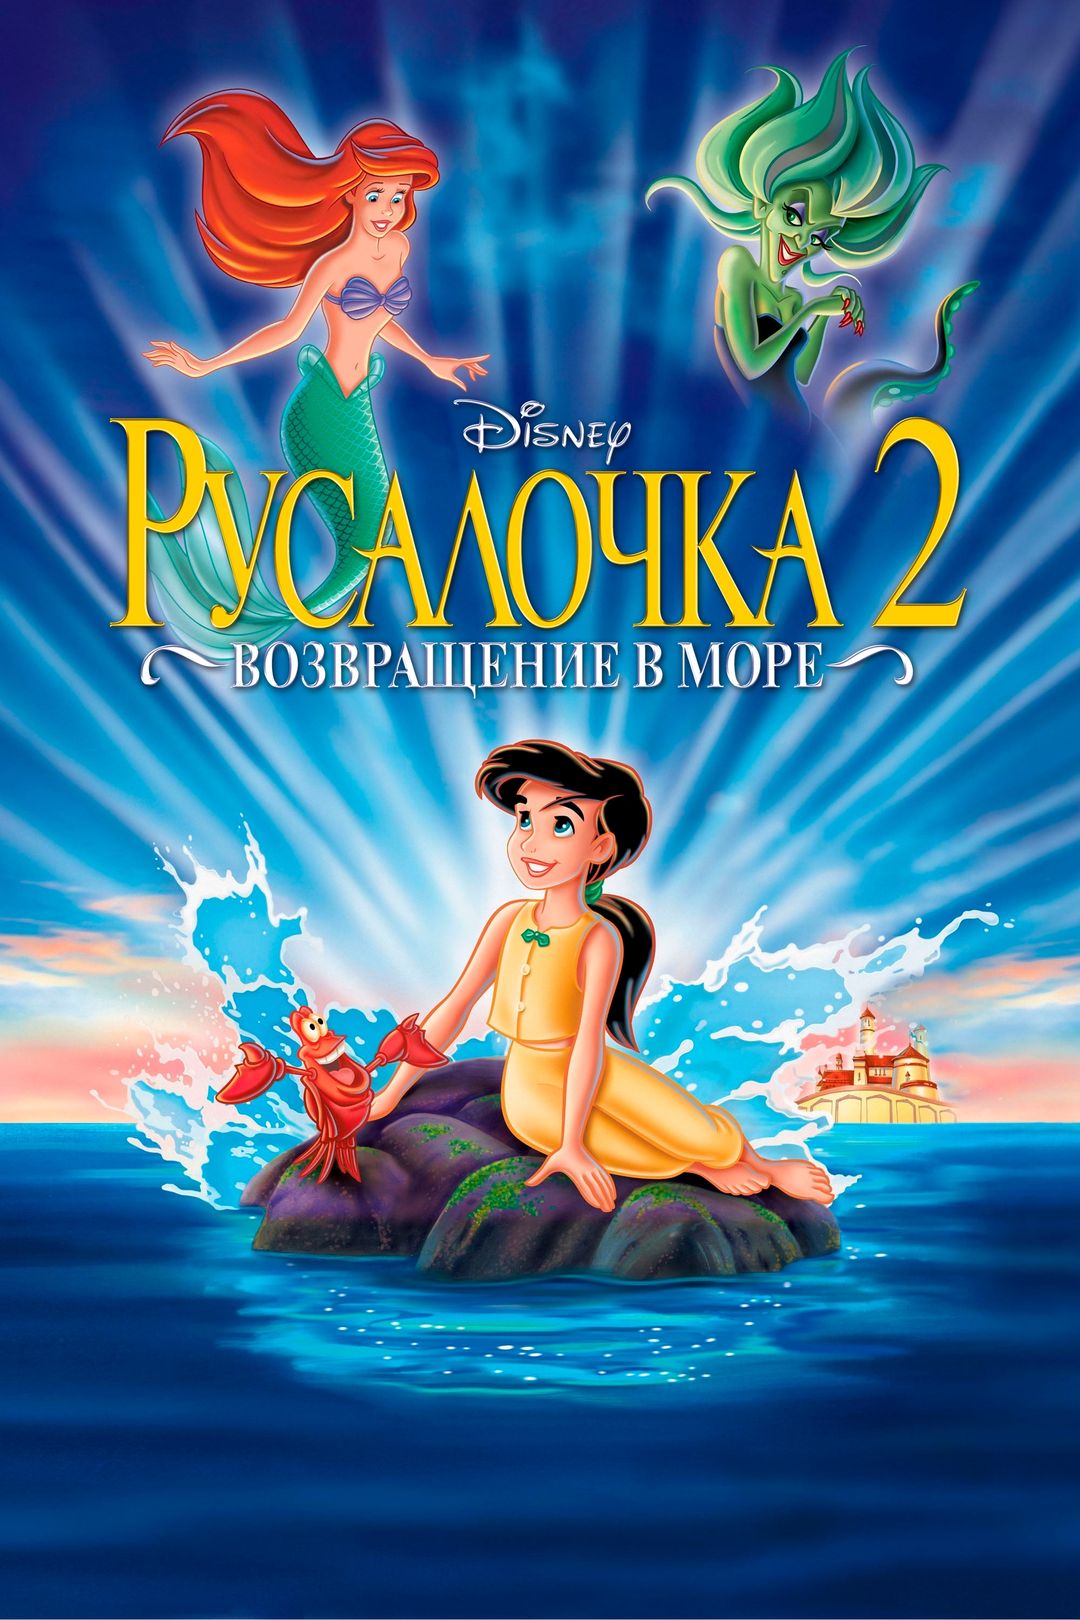 Русалочка 2: Возвращение в море мультфильм () смотреть онлайн в HD бесплатно на киного